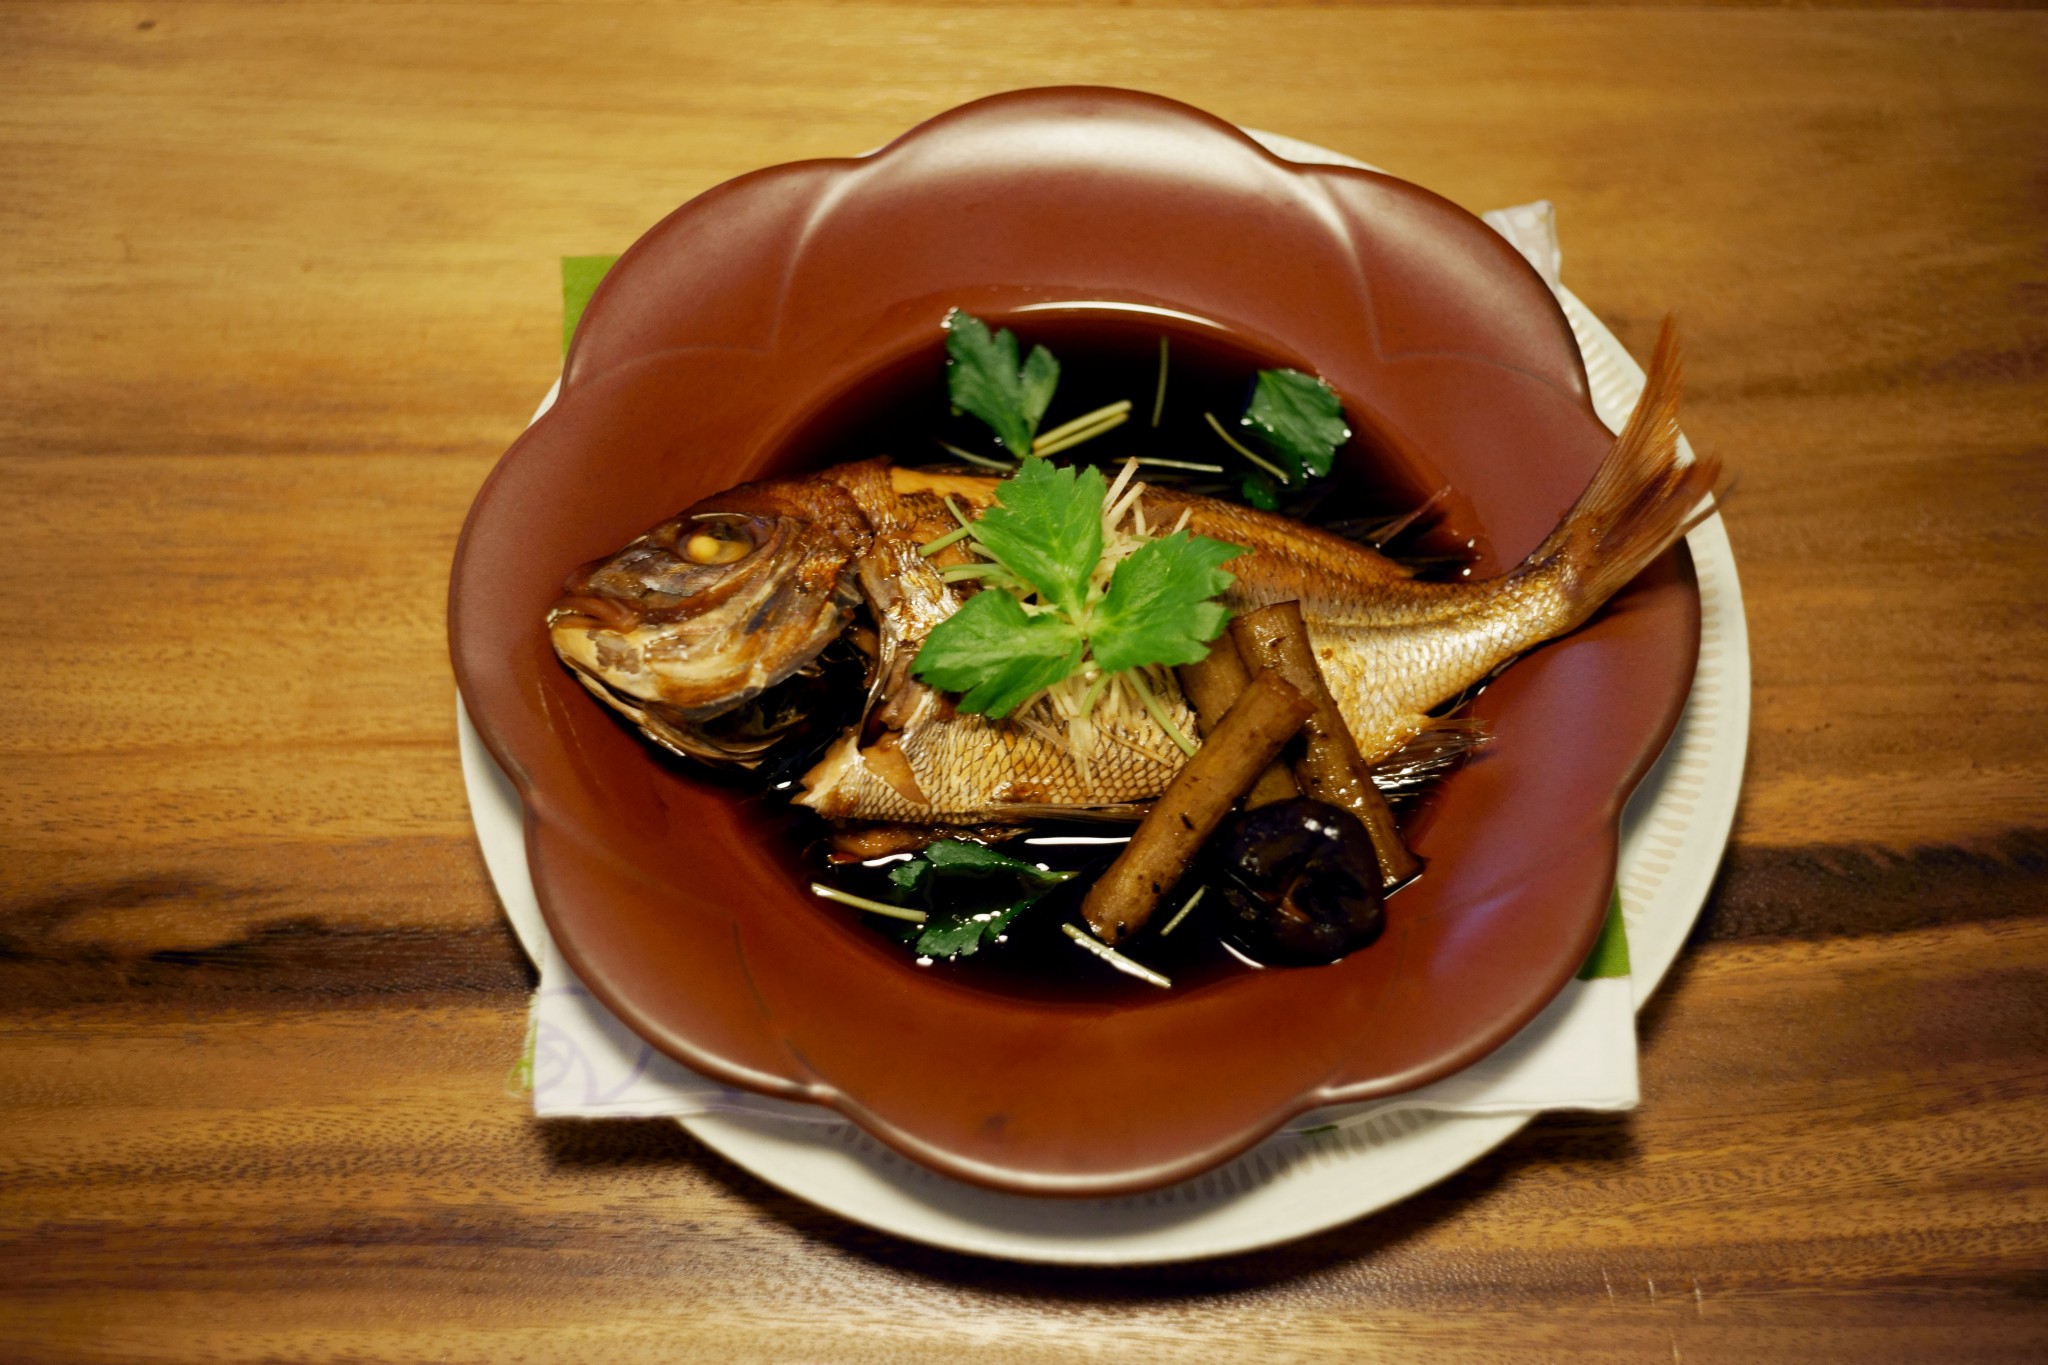 「真鯛の煮付け」2,400円は、純米酒と和三盆を使った上品な味わい。